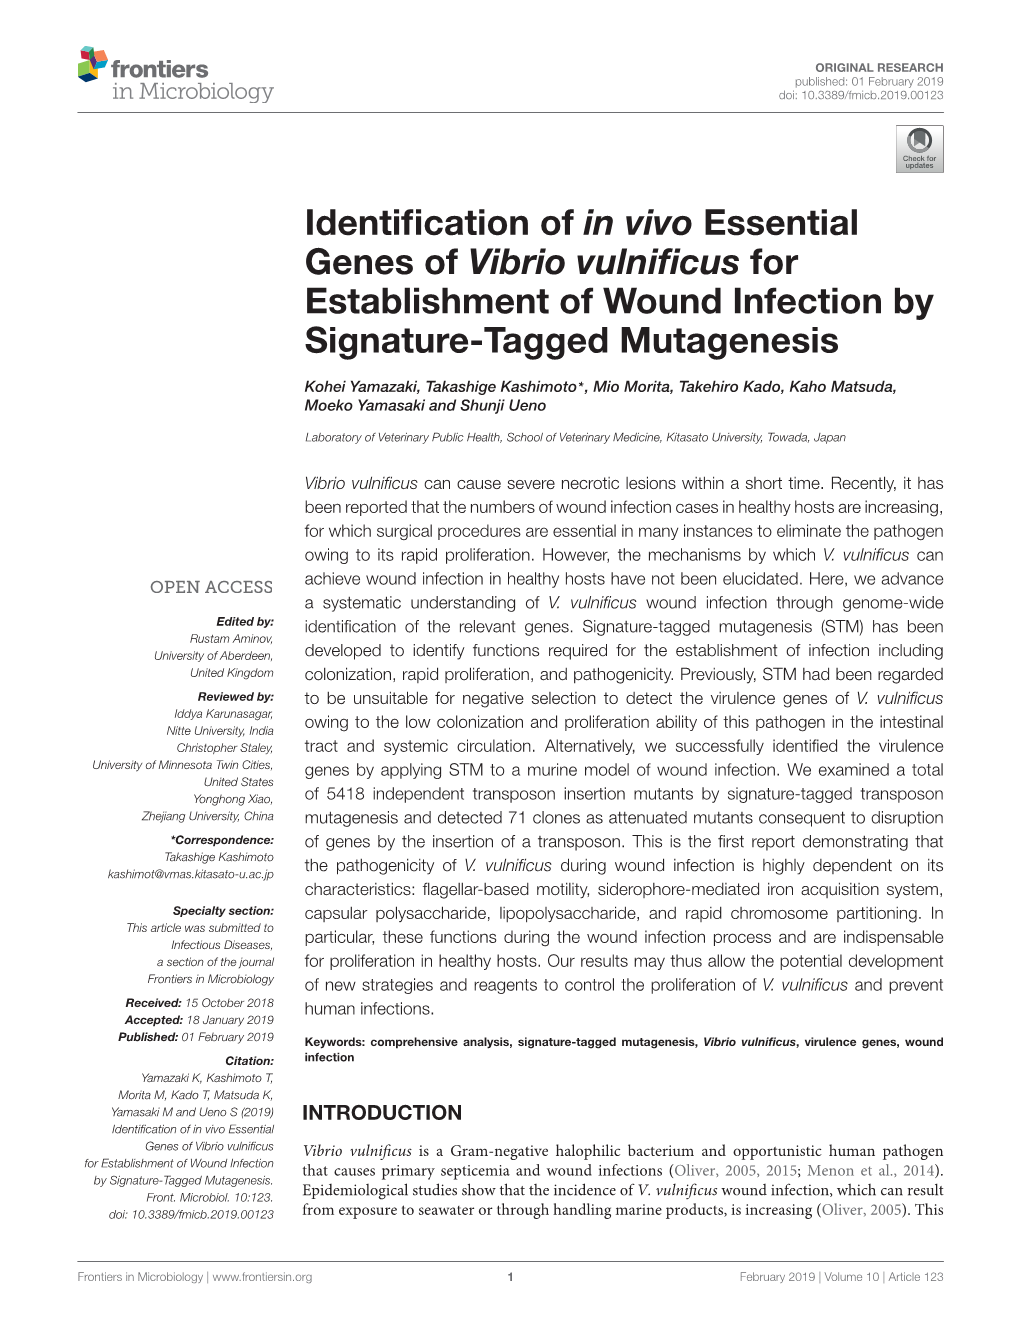 Identification of in Vivo Essential Genes of Vibrio Vulnificus For